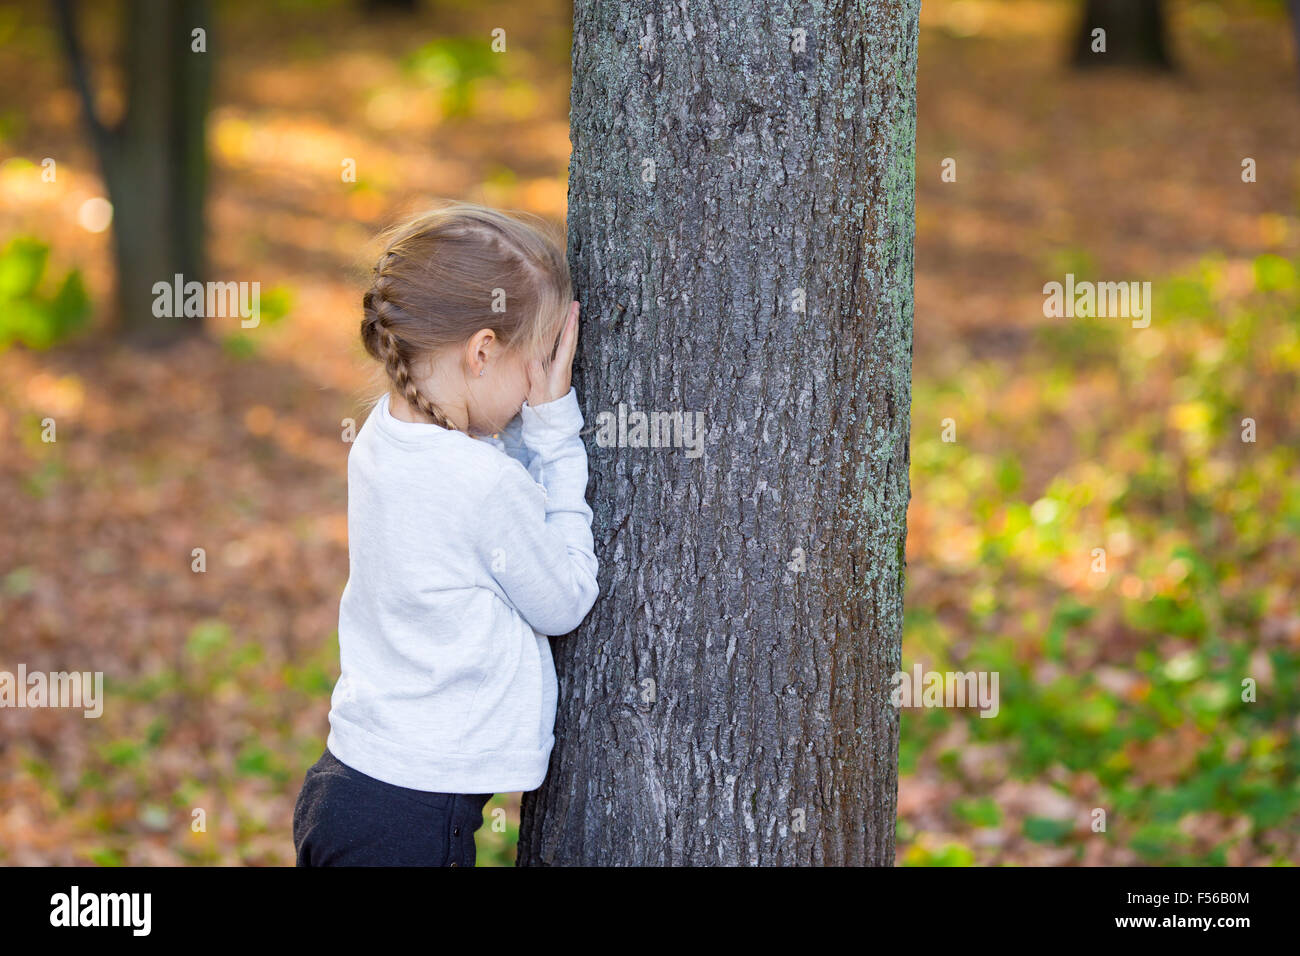 Гулять в прятки. ПРЯТКИ В парке. Маленькая девочка возле дерева. Девочка играет в ПРЯТКИ. Маленькая девочка возле парка.